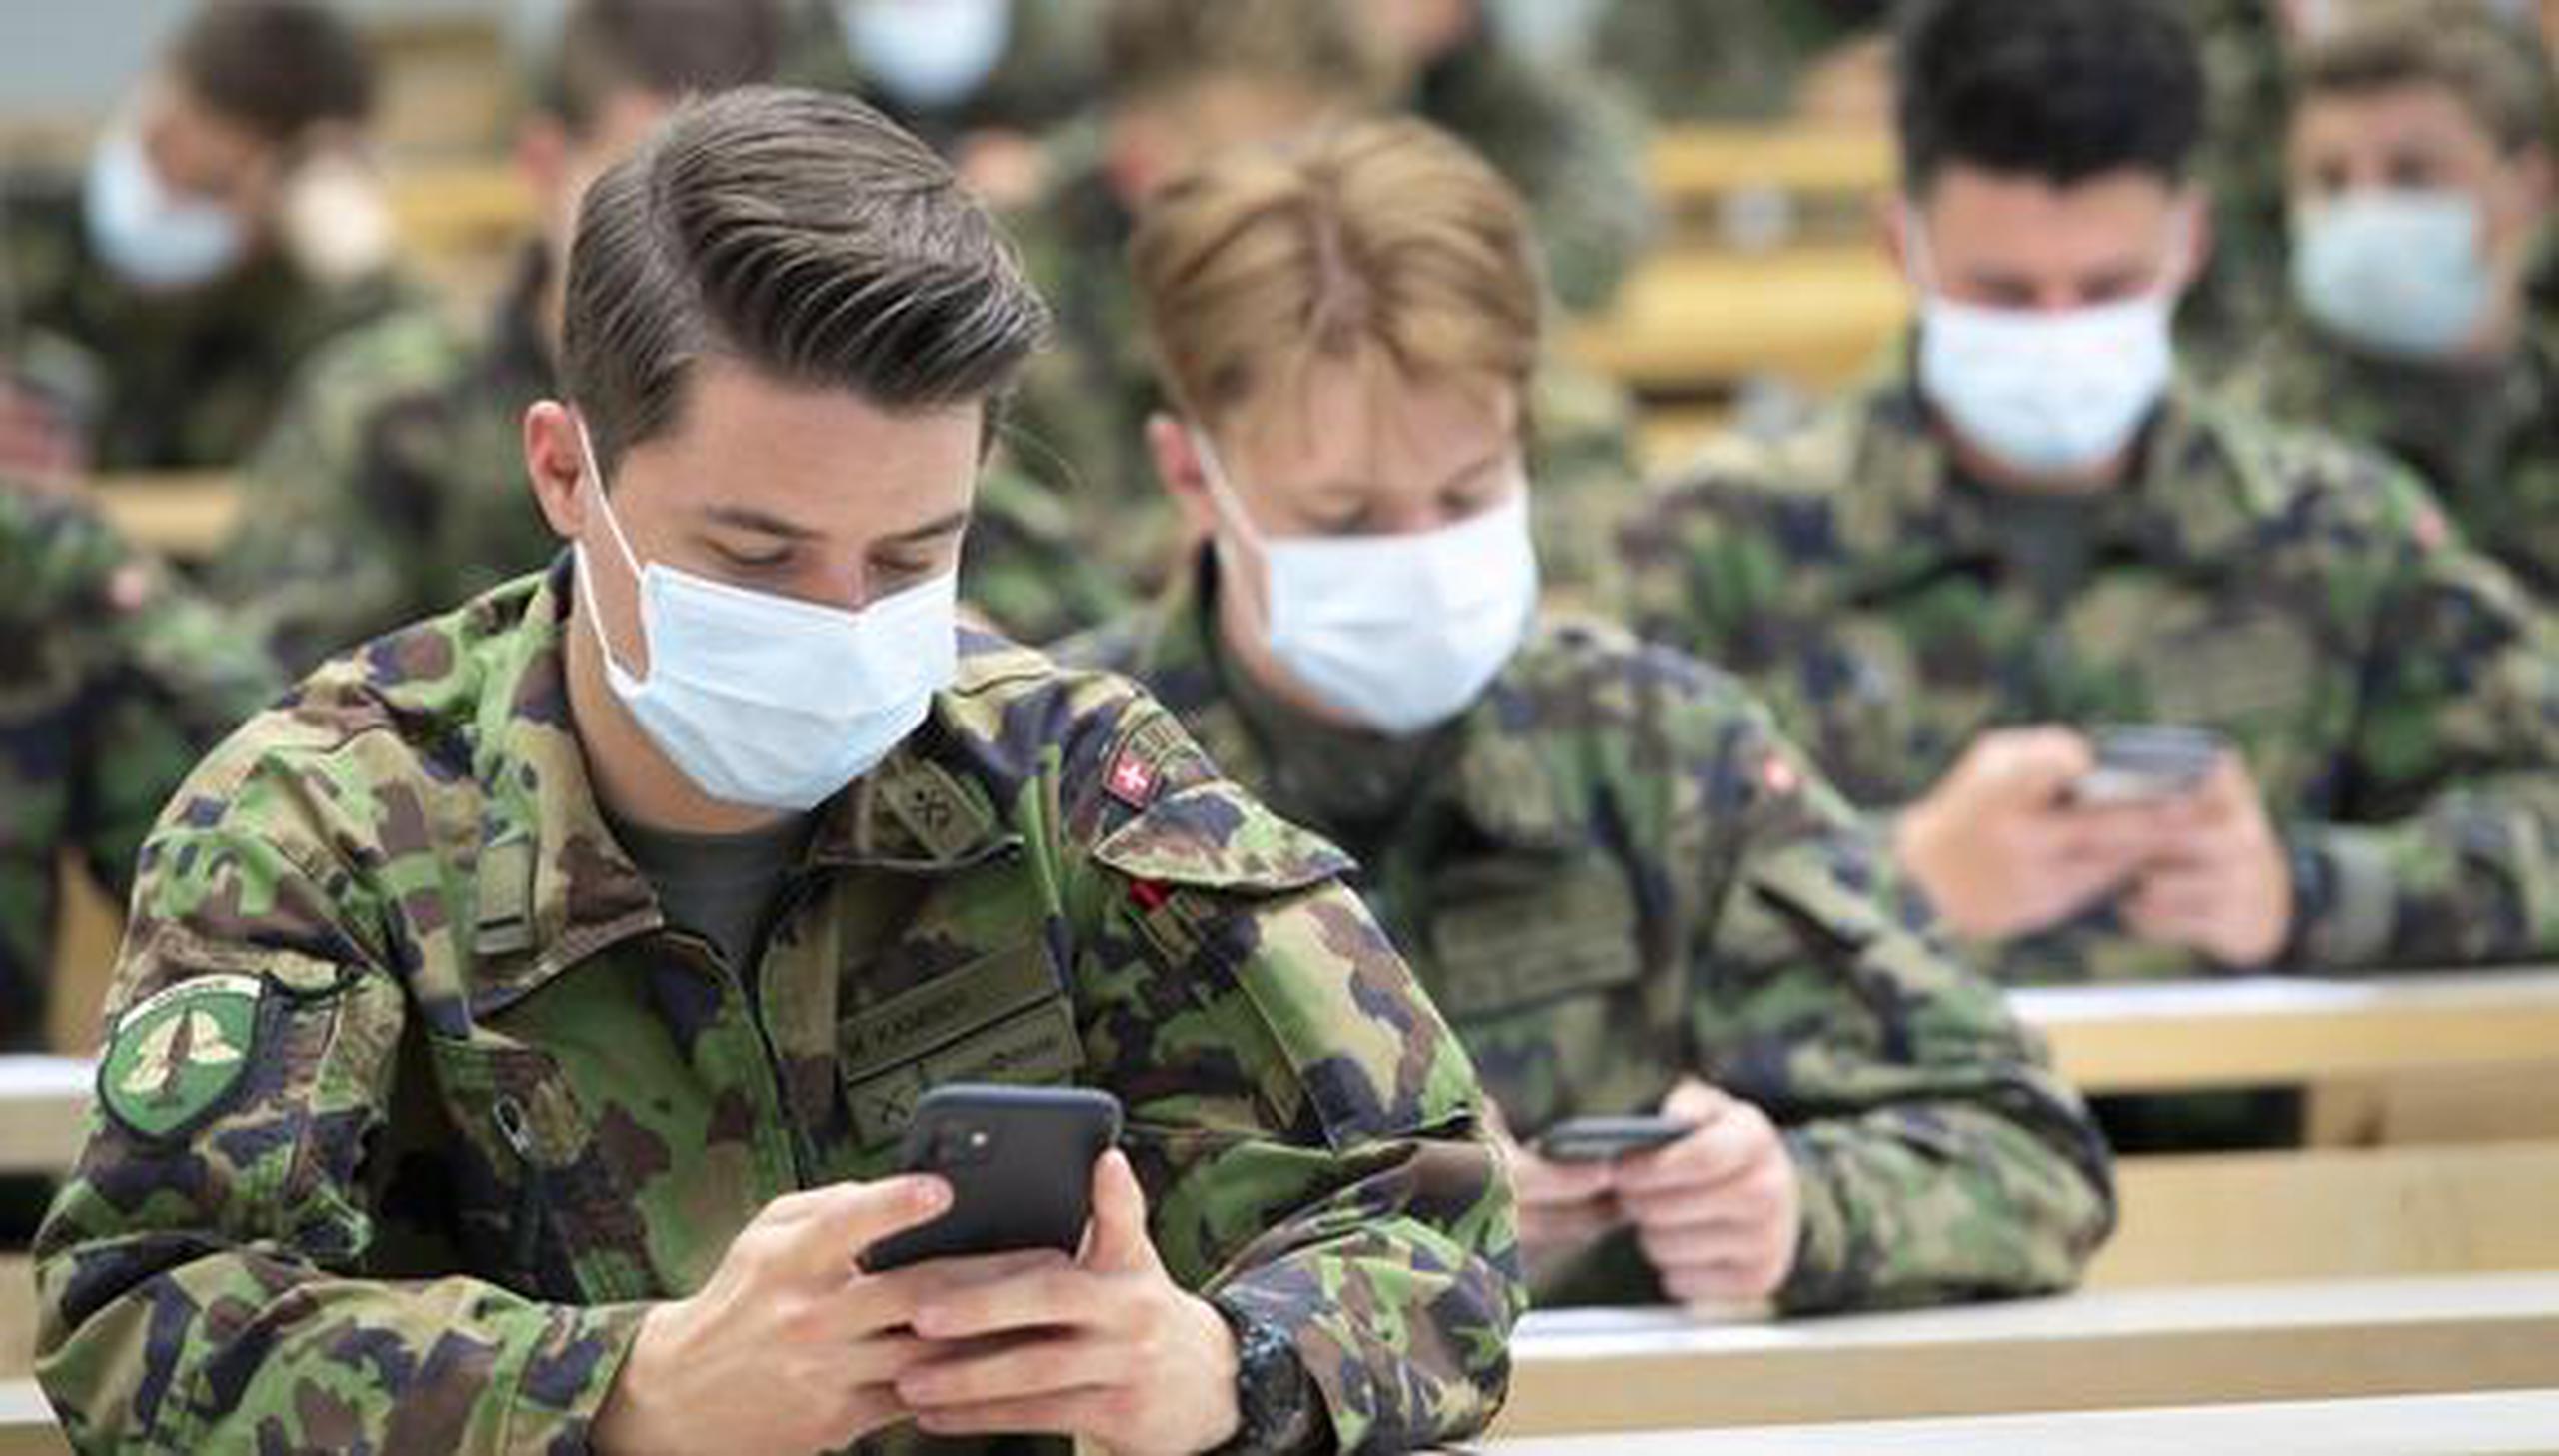 El costo de implementar la aplicación de mensajería Threema en el gobierno suizo será de $4.31 por soldado.